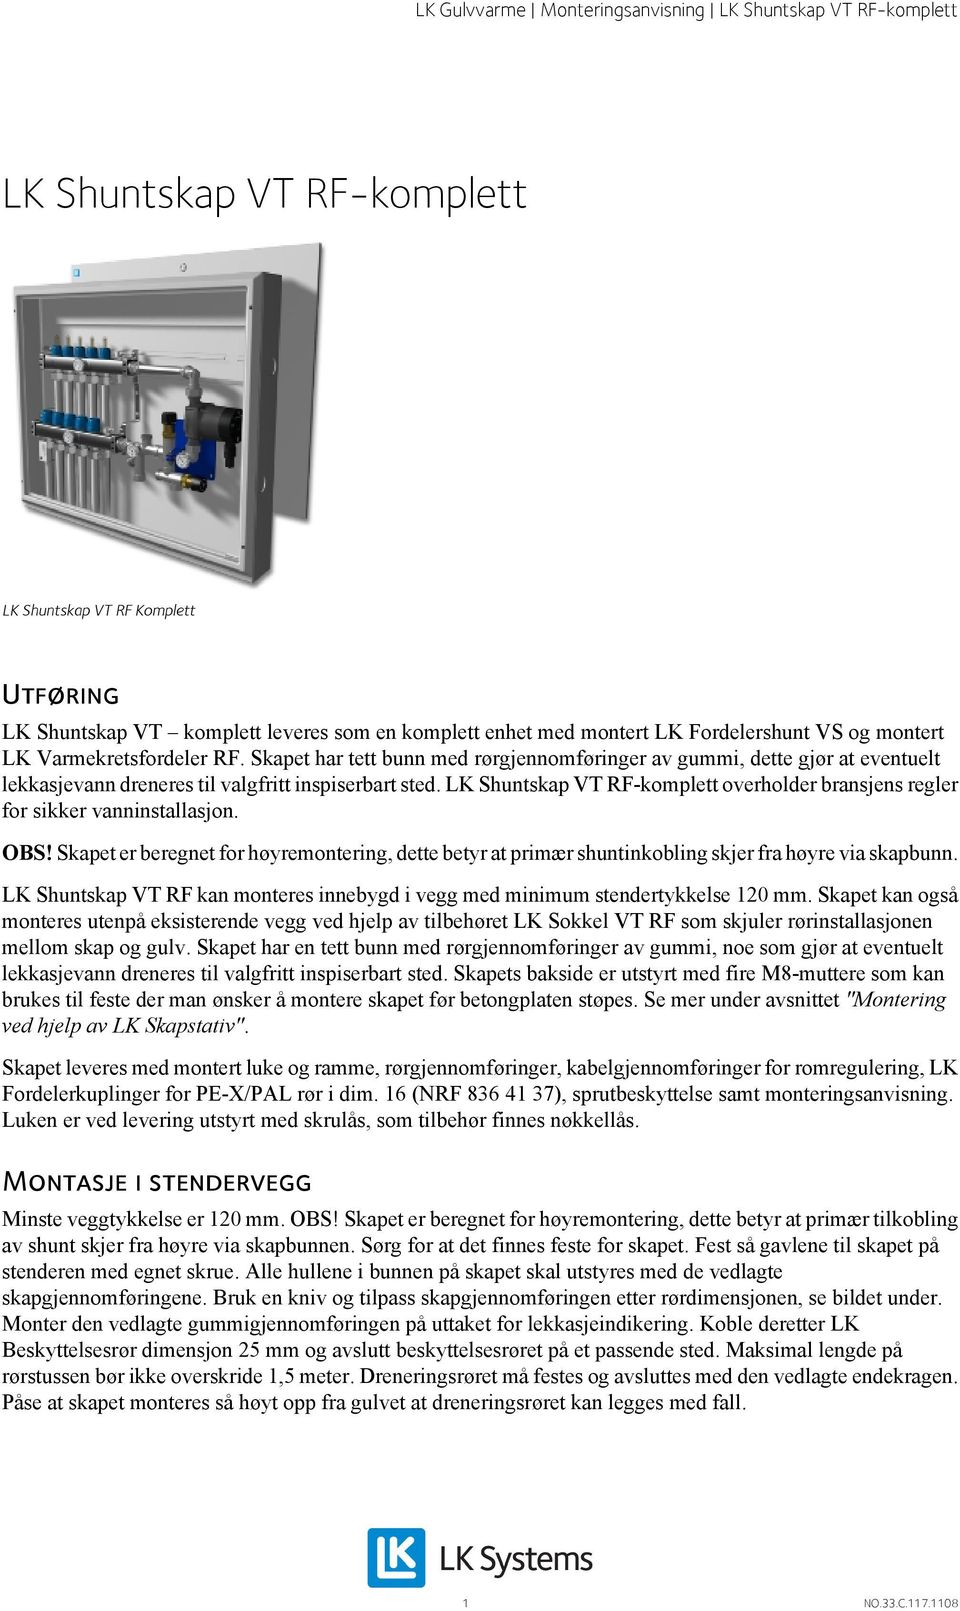 LK Shuntskap VT RF-komplett overholder bransjens regler for sikker vanninstallasjon. OBS! Skapet er beregnet for høyremontering, dette betyr at primær shuntinkobling skjer fra høyre via skapbunn.